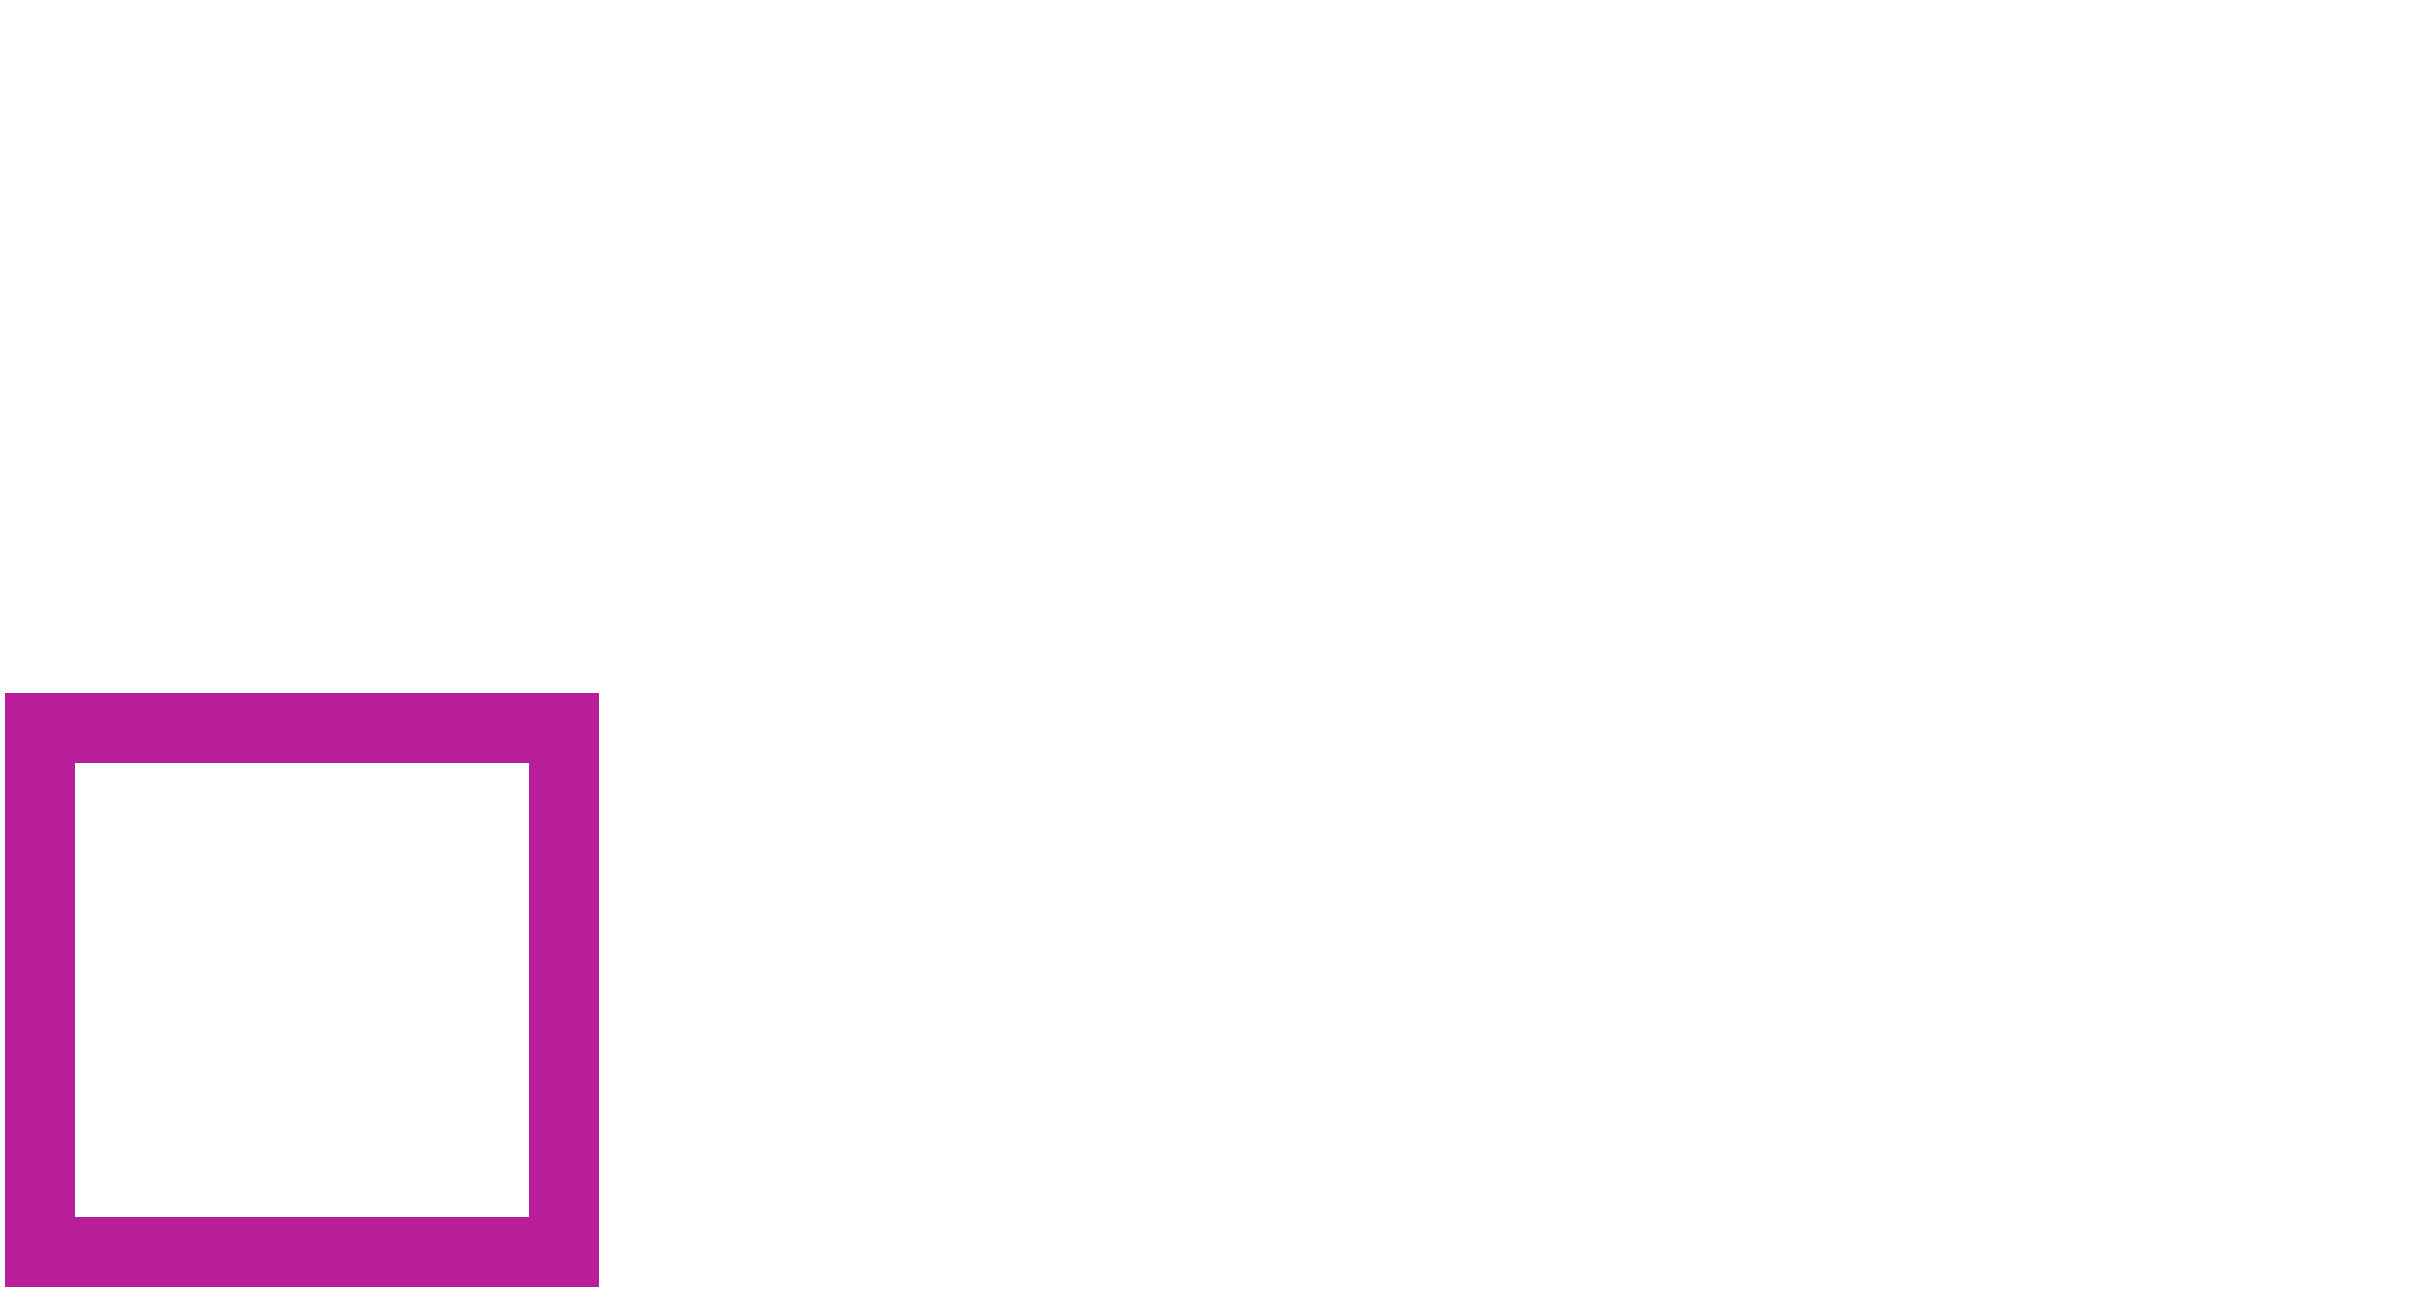 The Purple Room